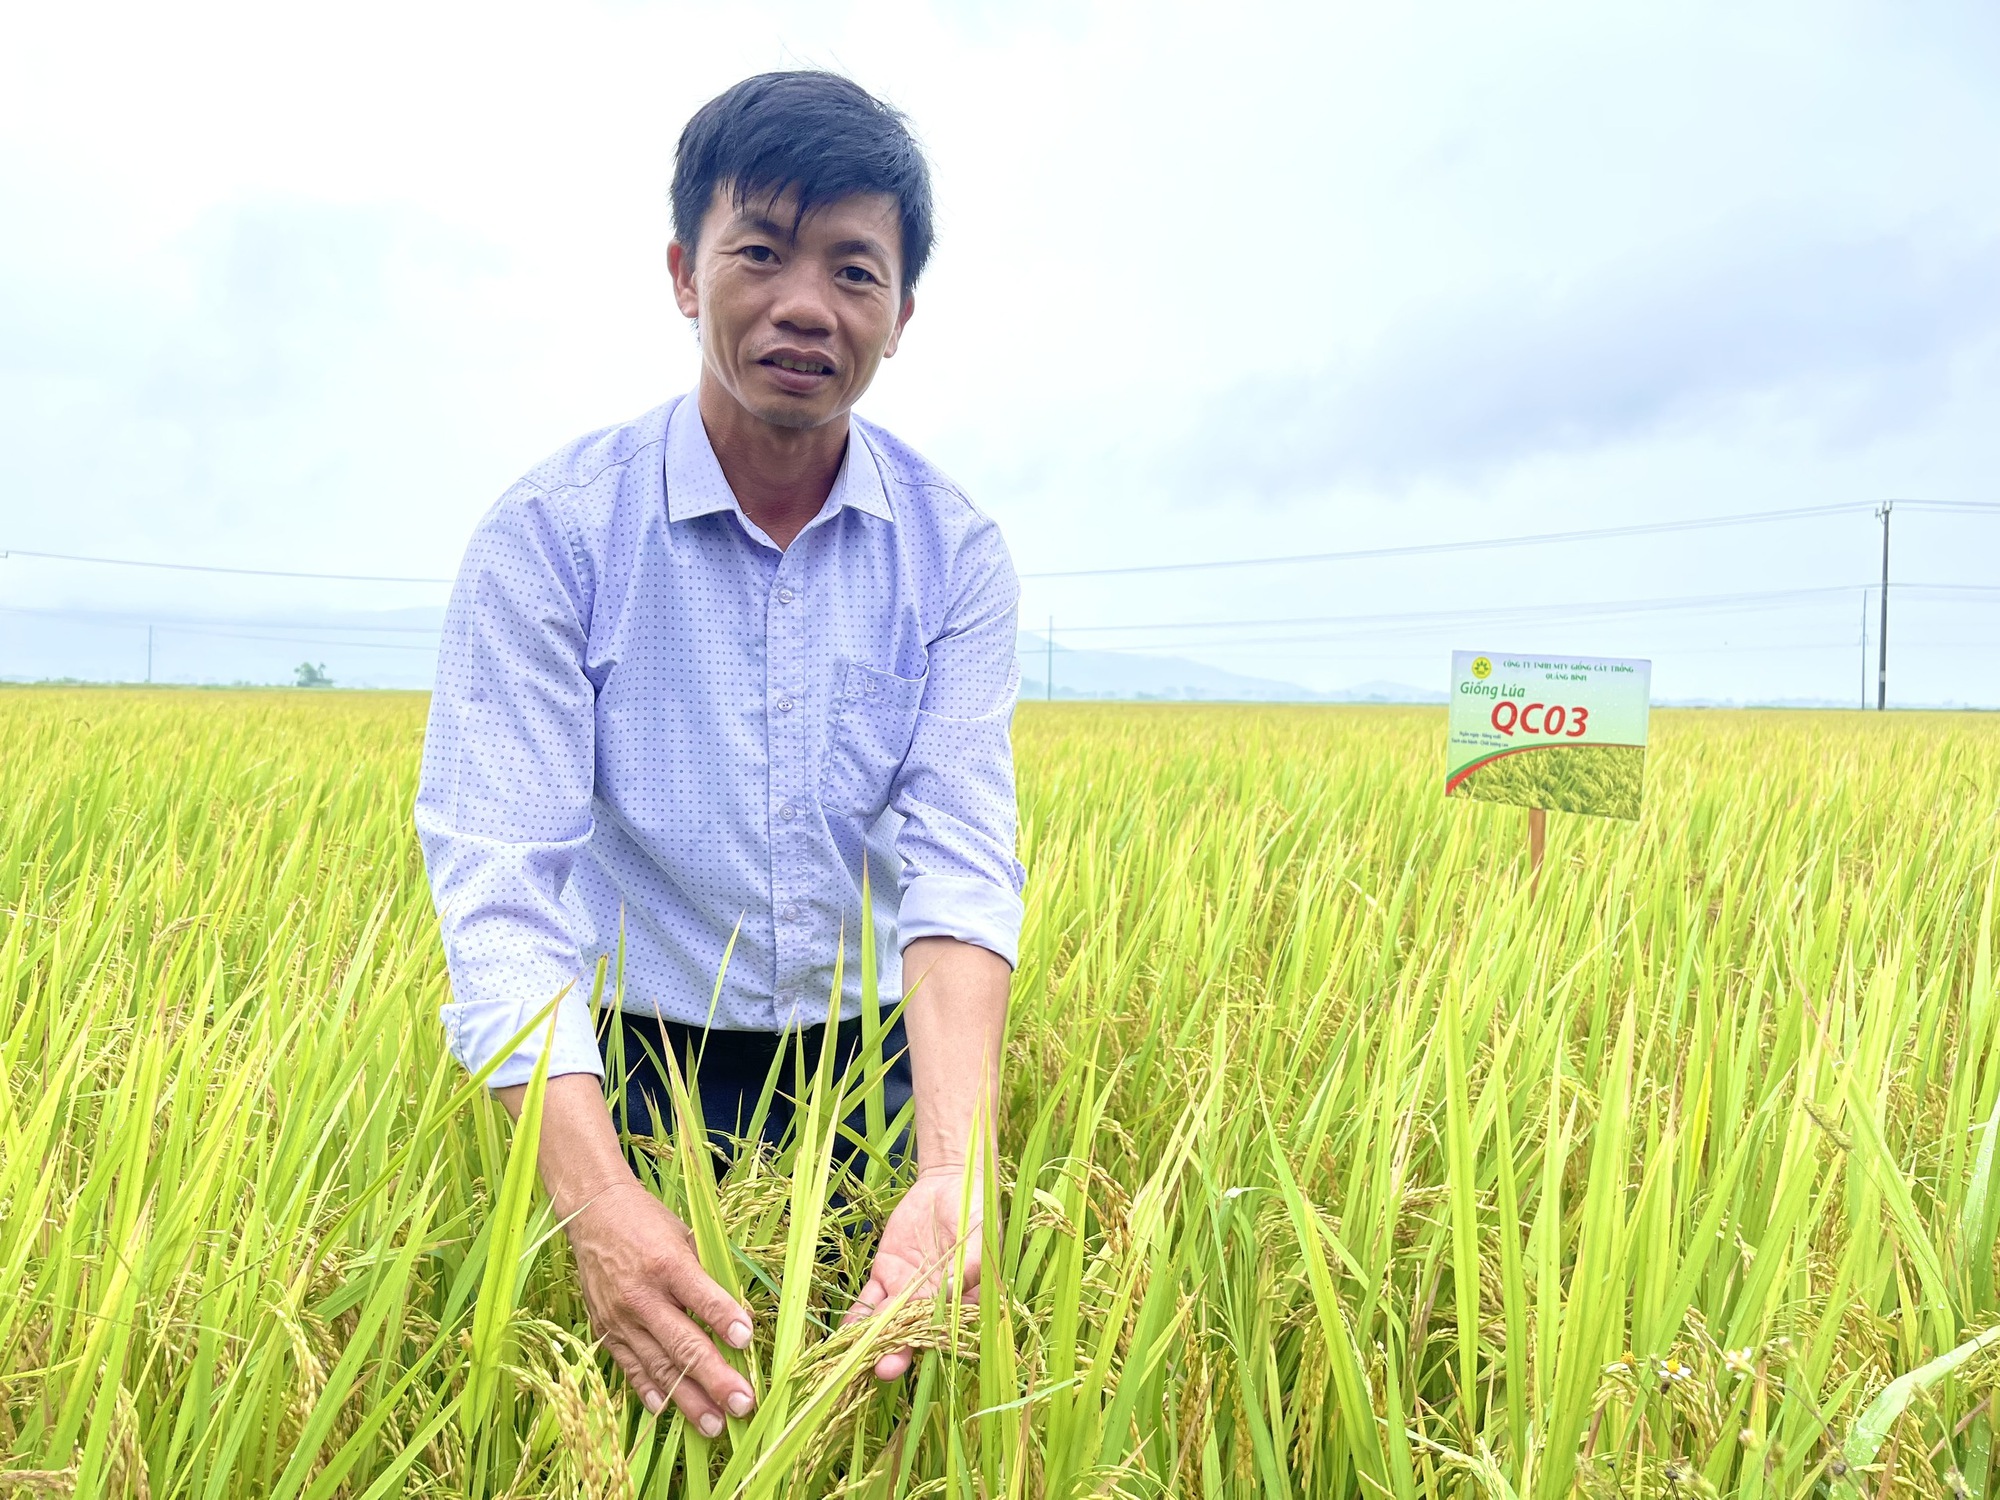 Quảng Bình: Nông dân thăm đồng, ngỡ ngàng với chất lượng, năng suất cao của giống lúa mới này - Ảnh 2.